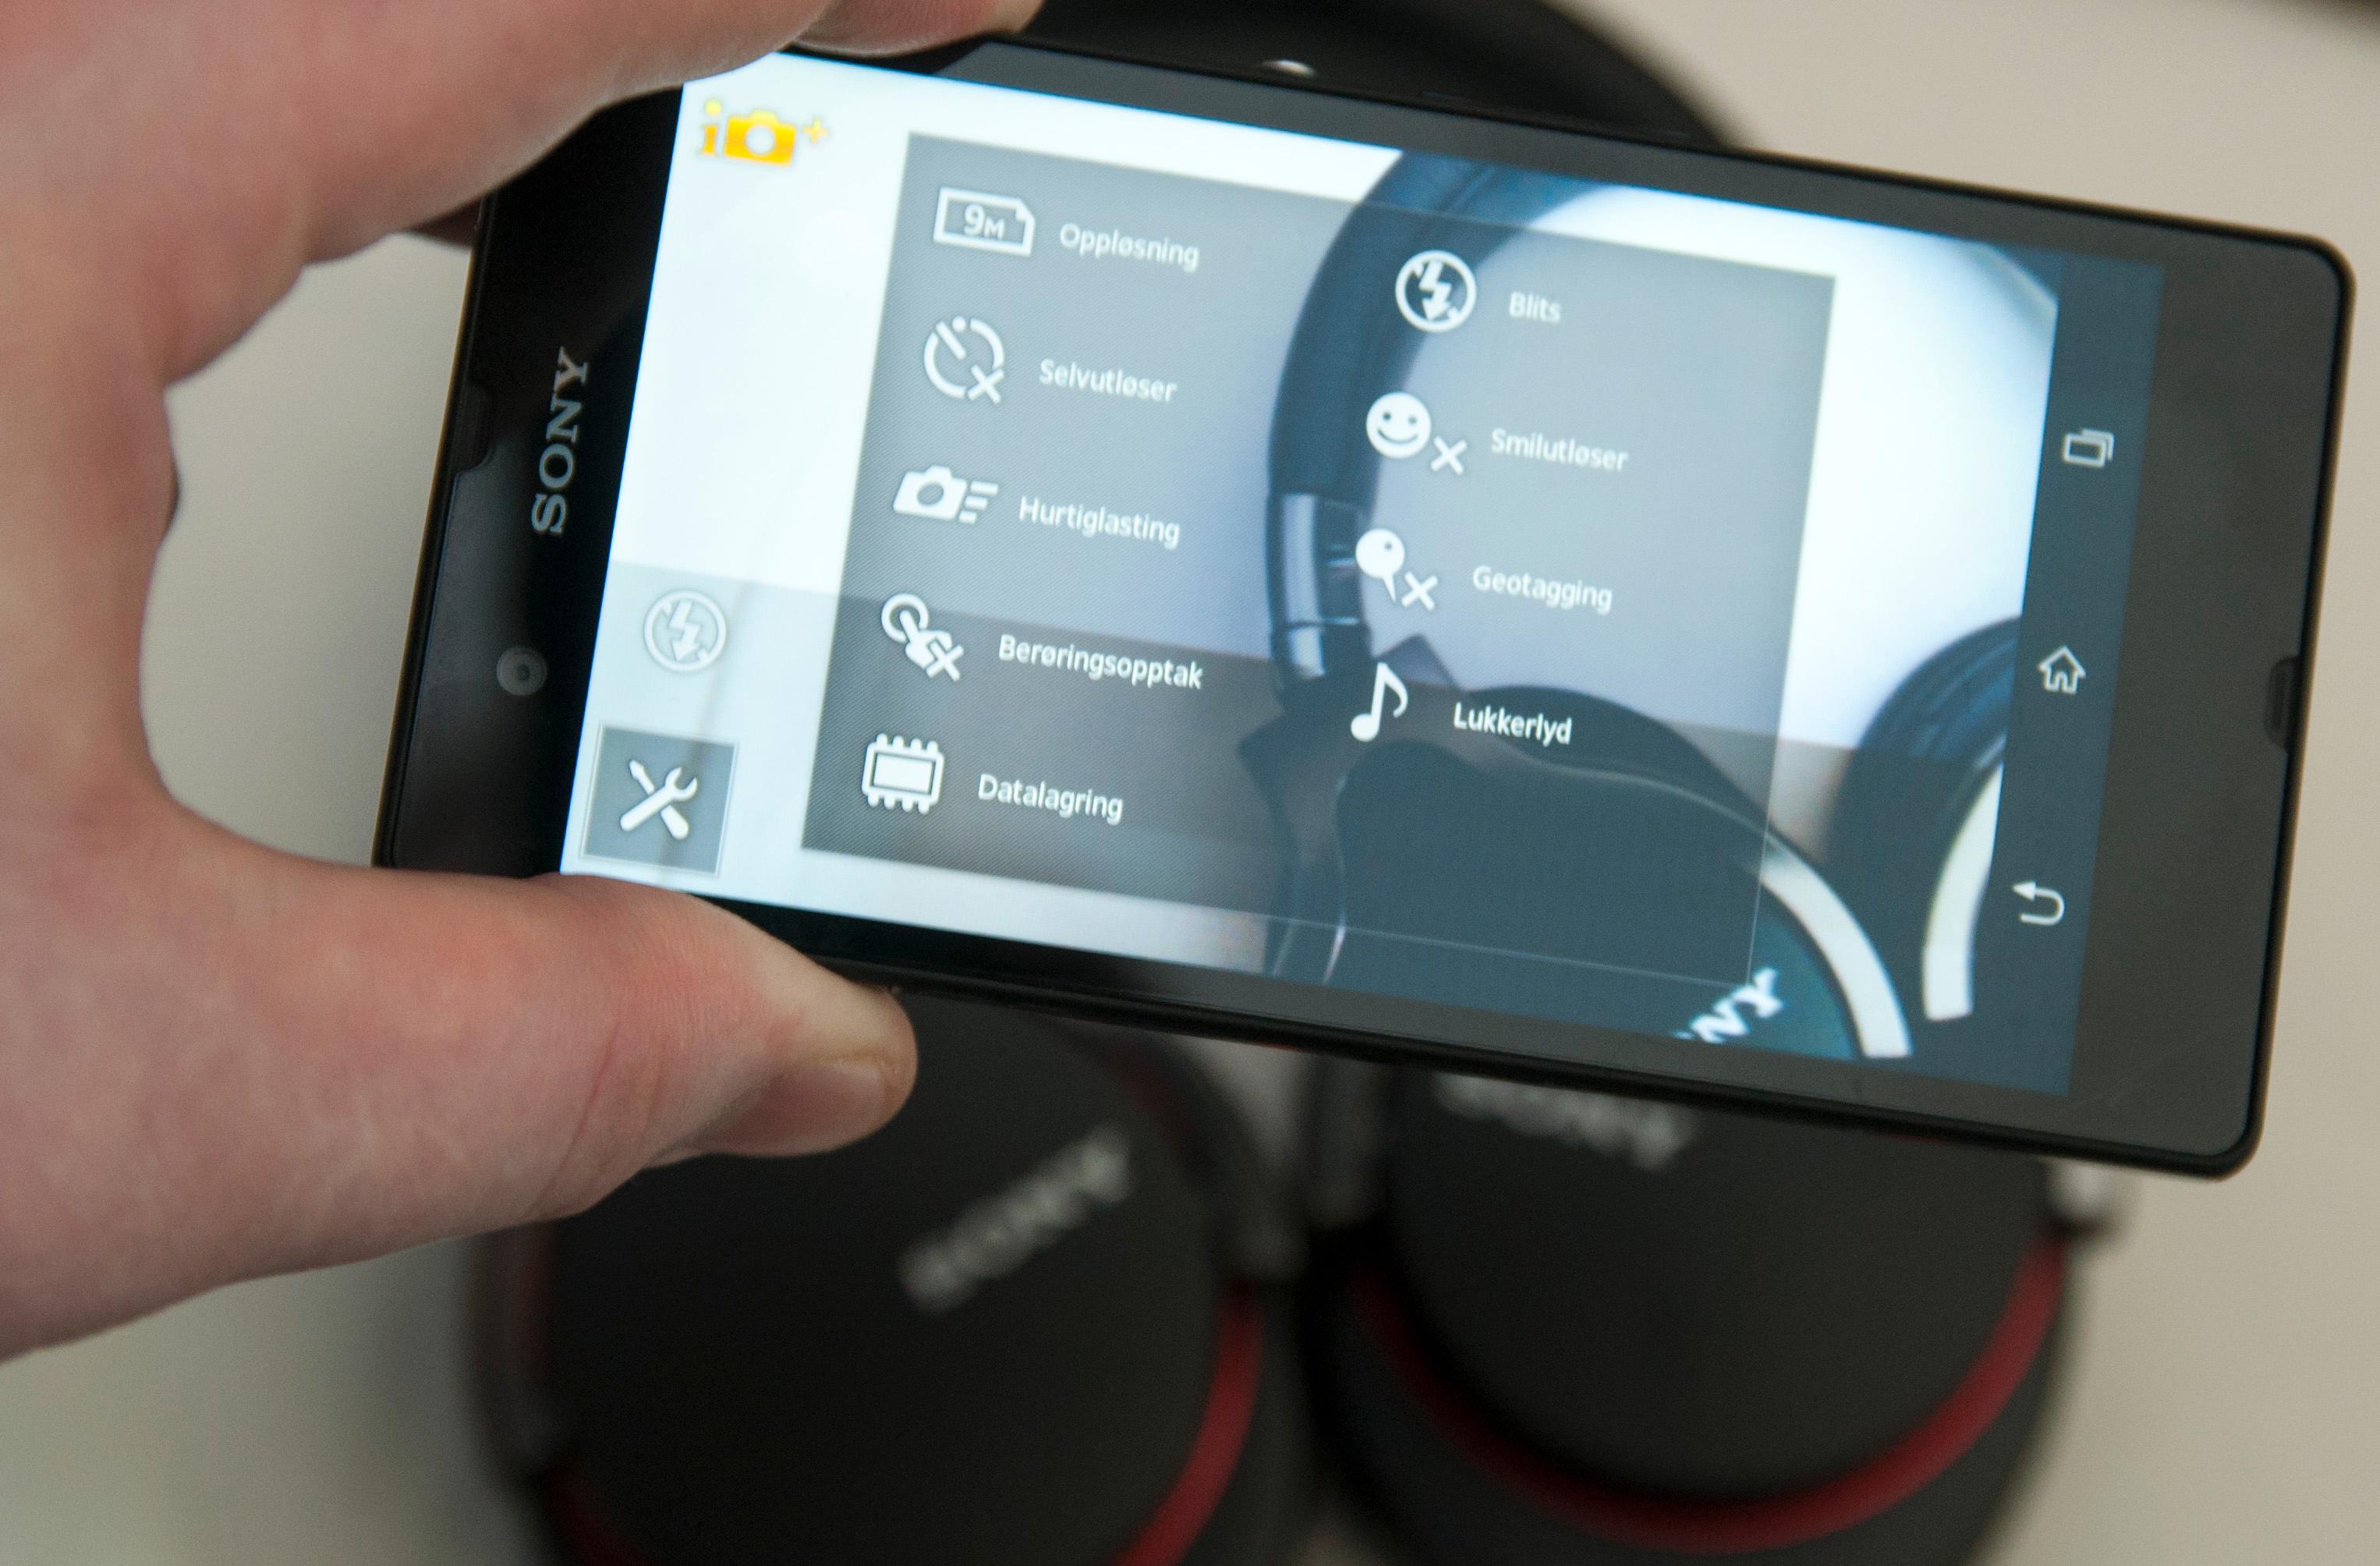 Du har mange ulike innstillinger å velge i når du skal fotografere med telefonen. Xperia Z har også en automodus som Sony lover skal være god til det meste.Foto: Finn Jarle Kvalheim, Amobil.no